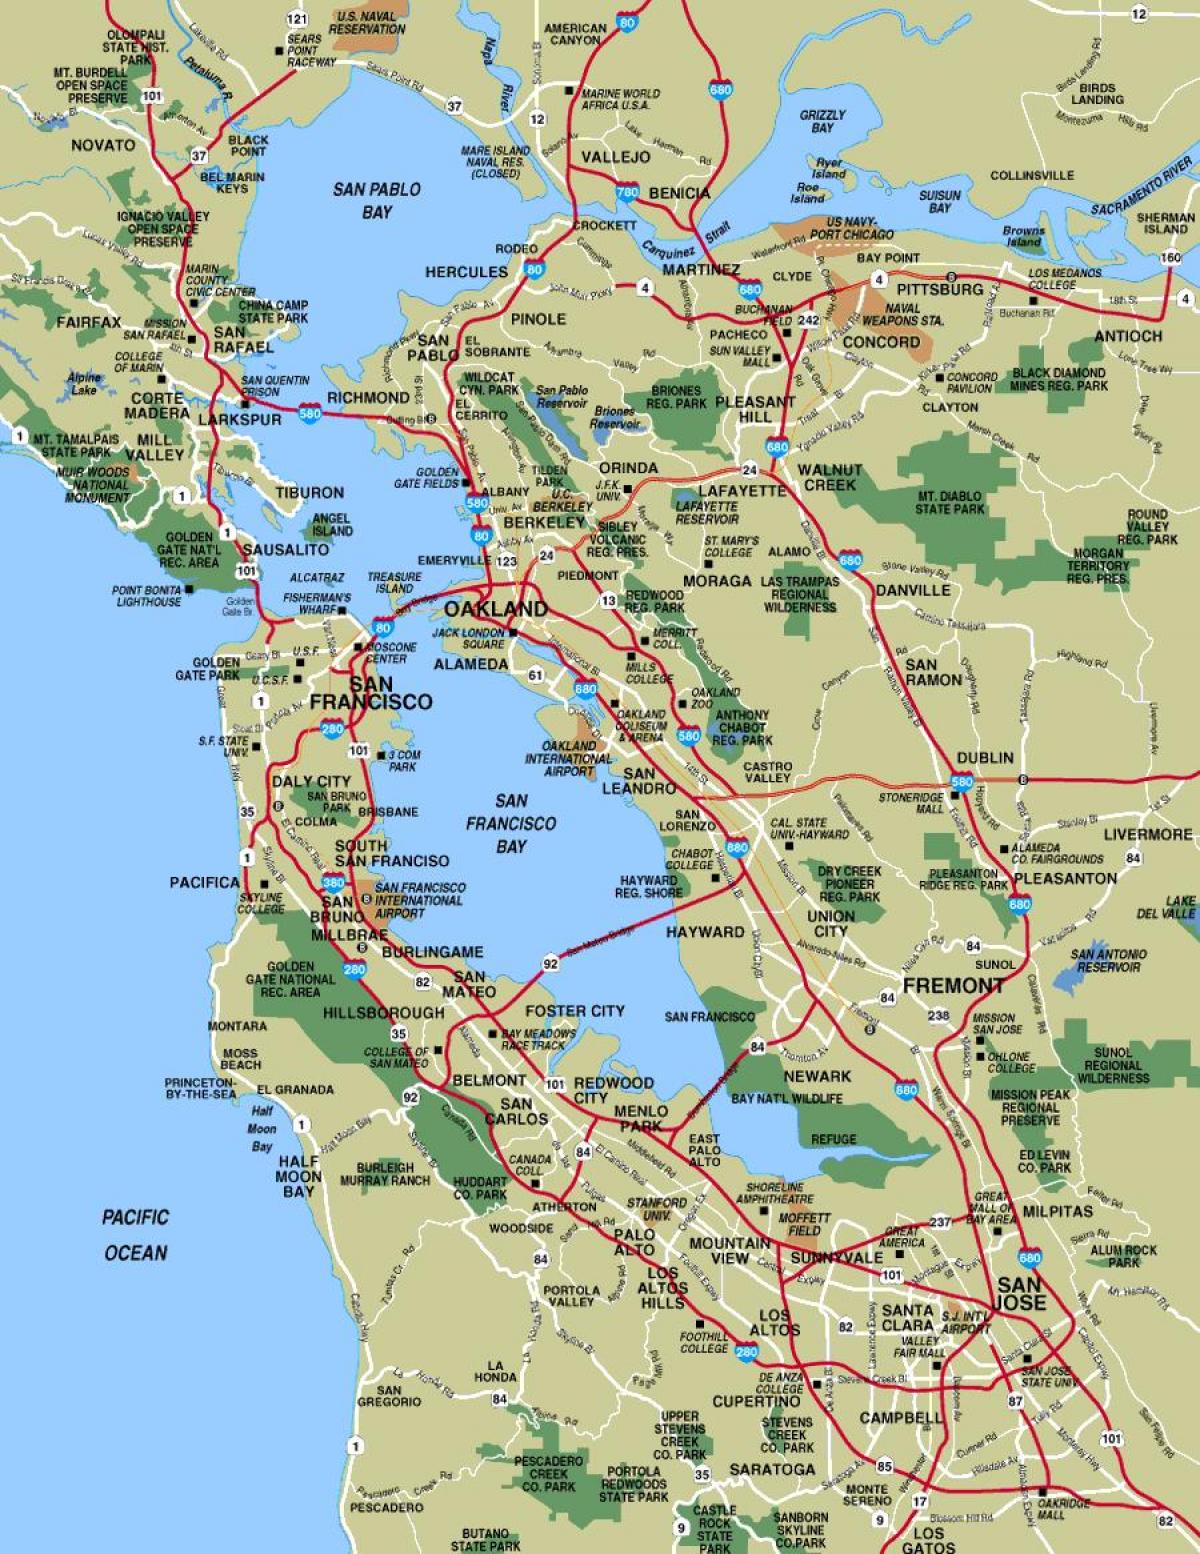 मानचित्र के अधिक से अधिक सैन फ्रांसिस्को